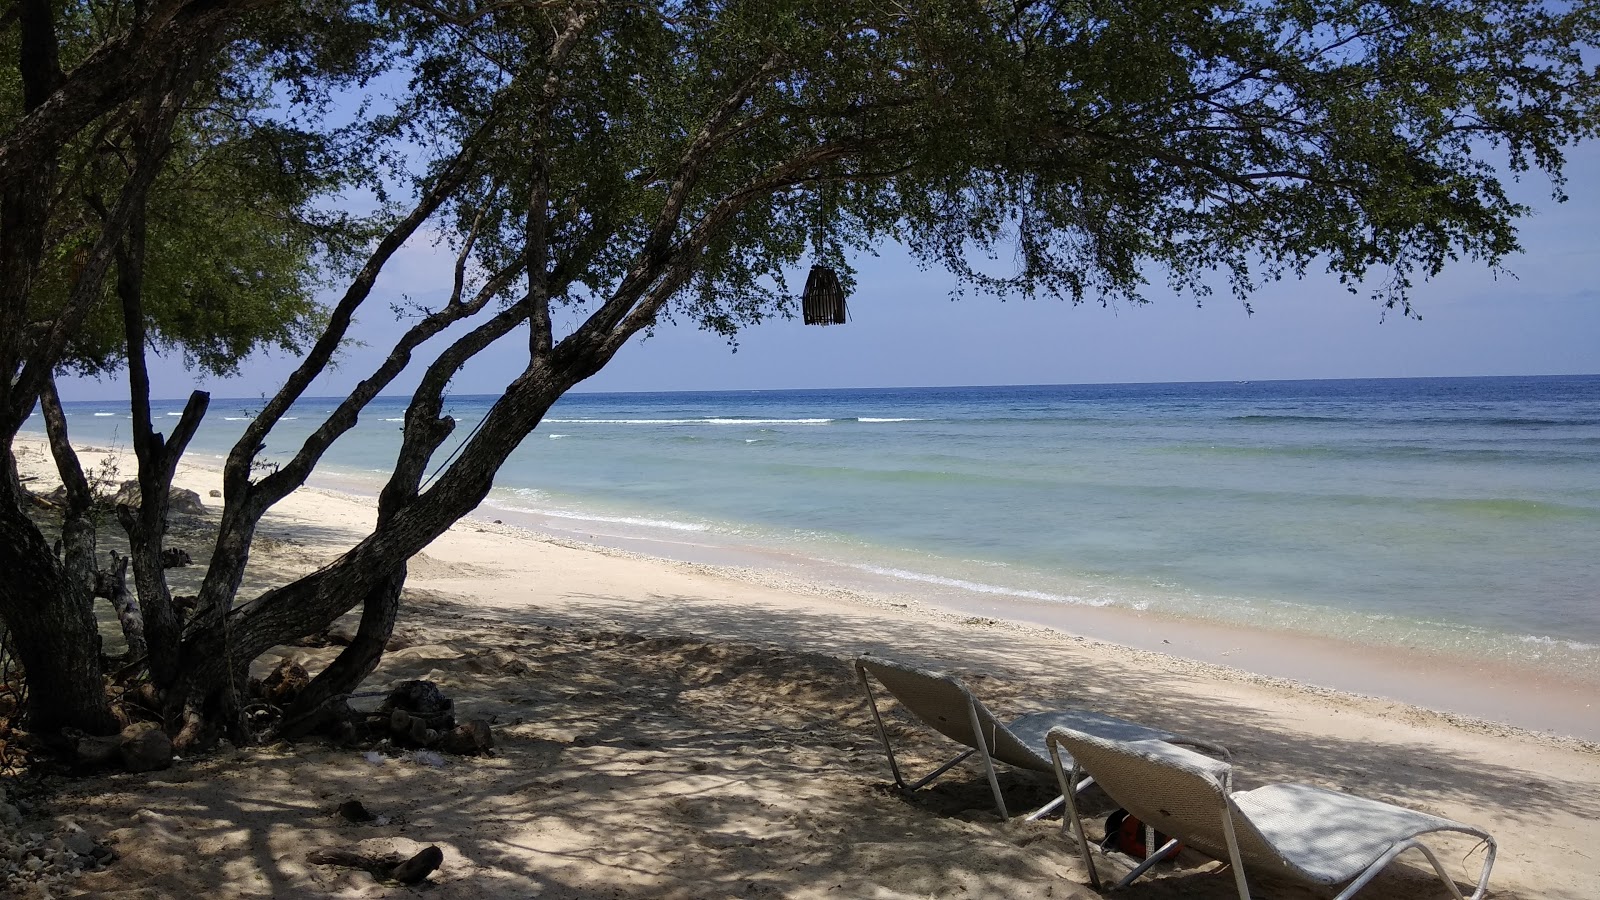 Fotografie cu Gili Trawangan Turtle Shore - locul popular printre cunoscătorii de relaxare